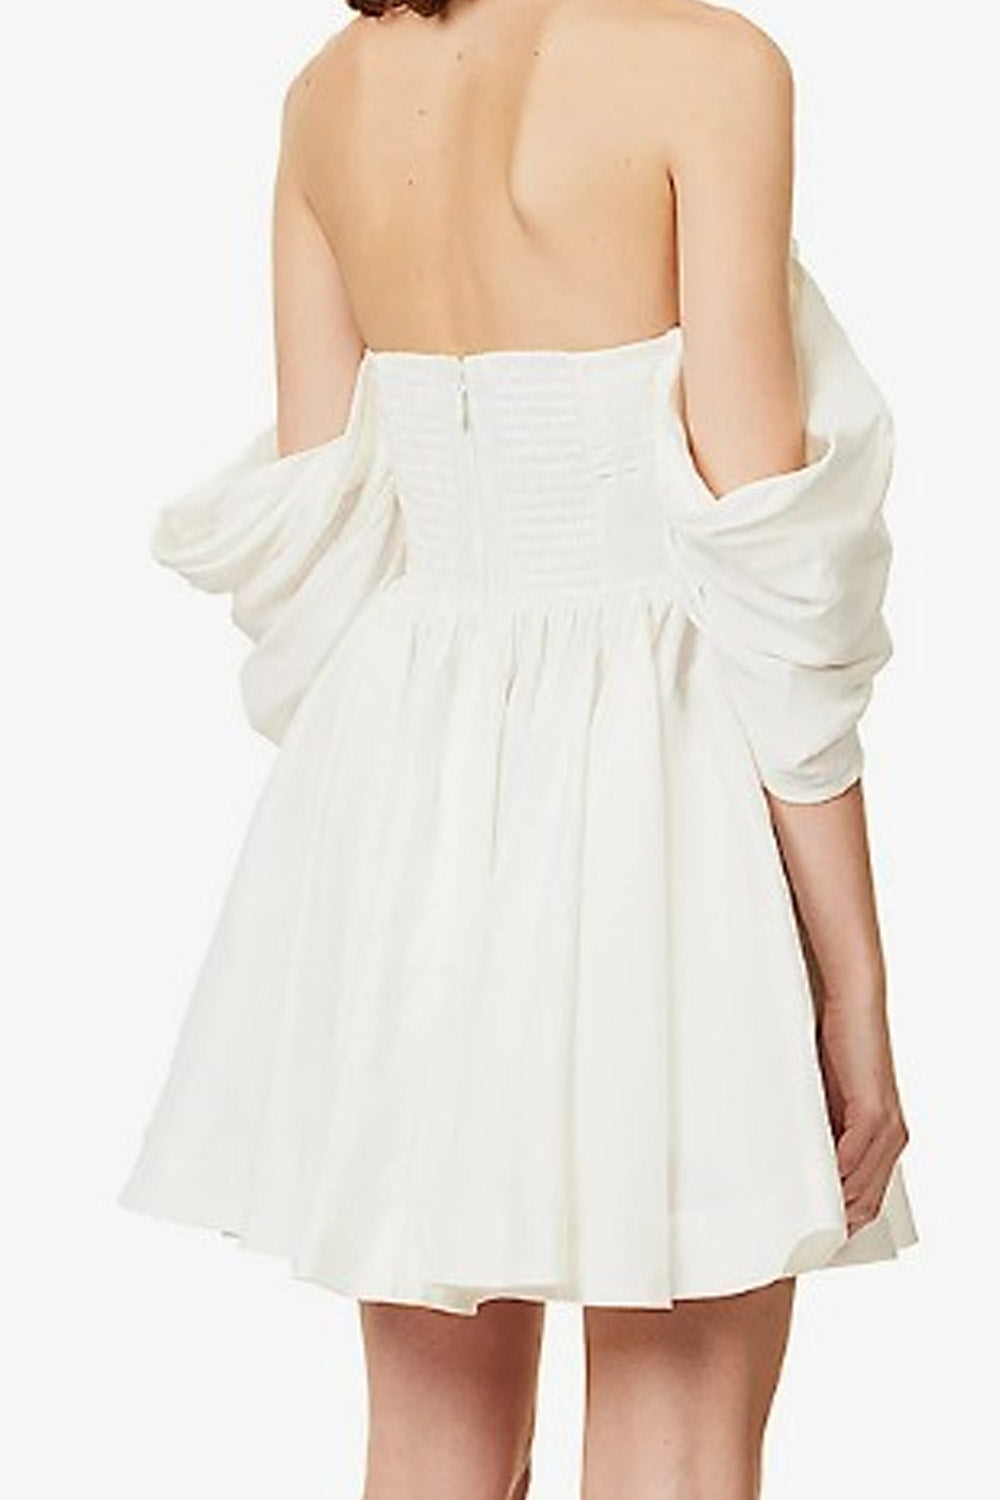 Panache White Dress